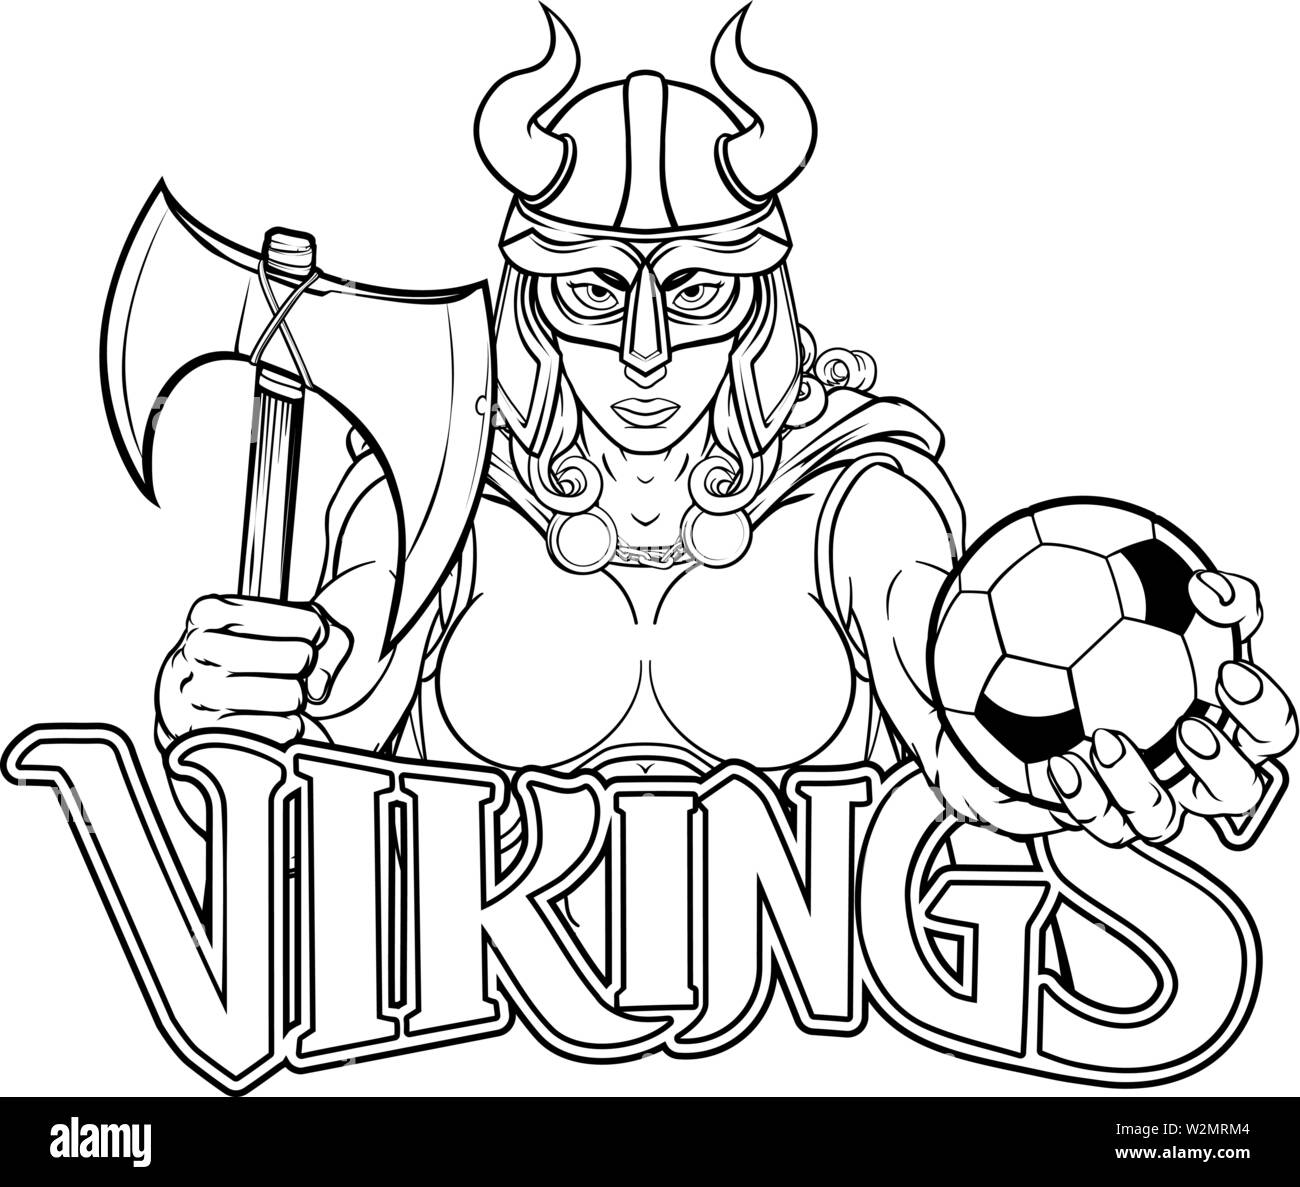 Femme Viking Warrior Football Gladiator Femme Illustration de Vecteur